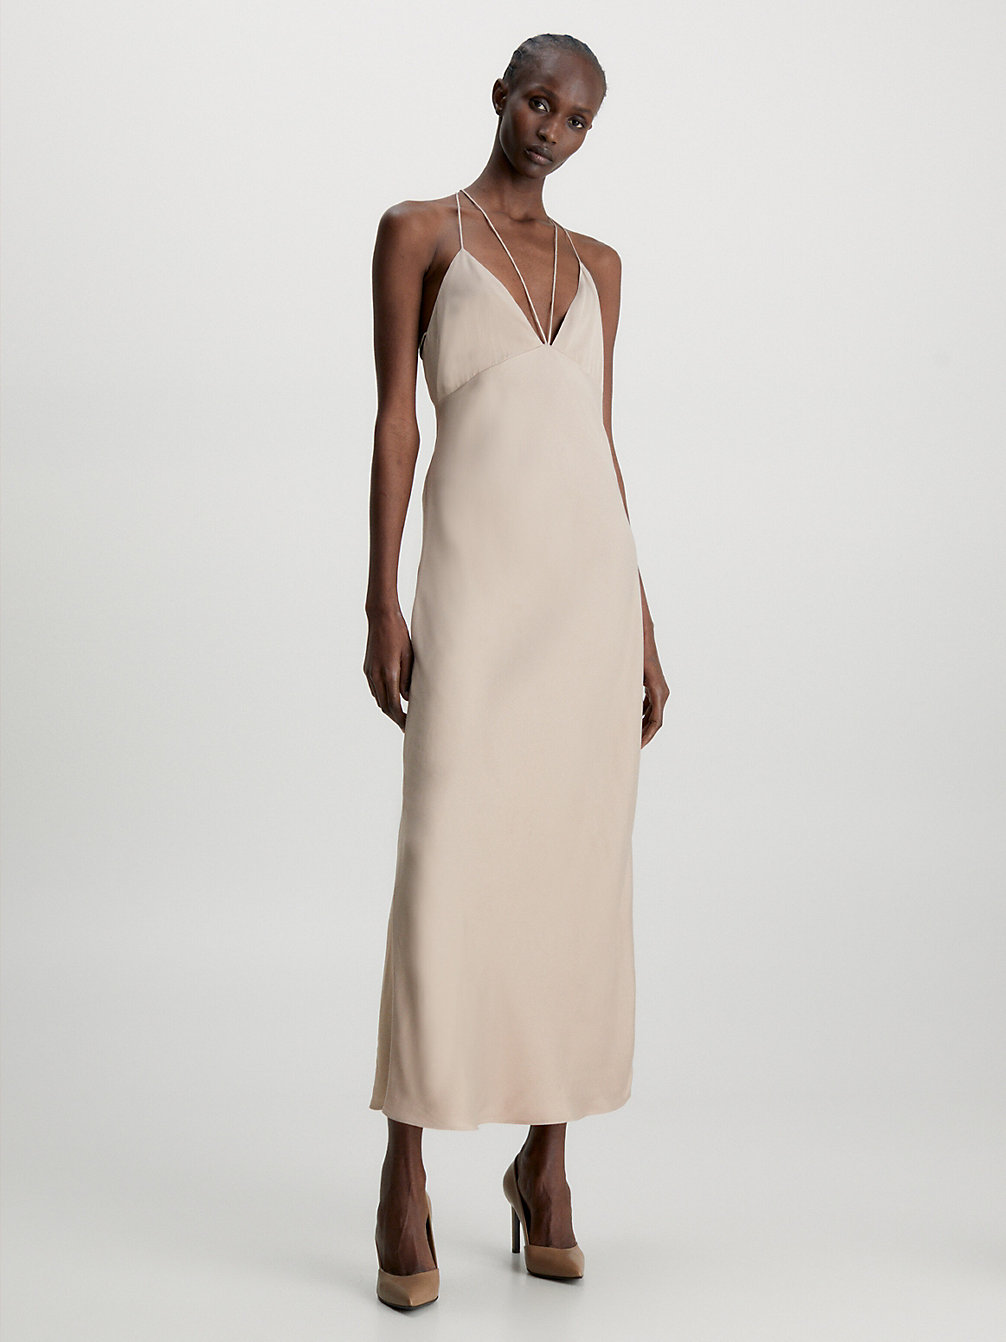 NATURAL > Wąska Wsuwana Sukienka Odsłaniająca Plecy > undefined Kobiety - Calvin Klein